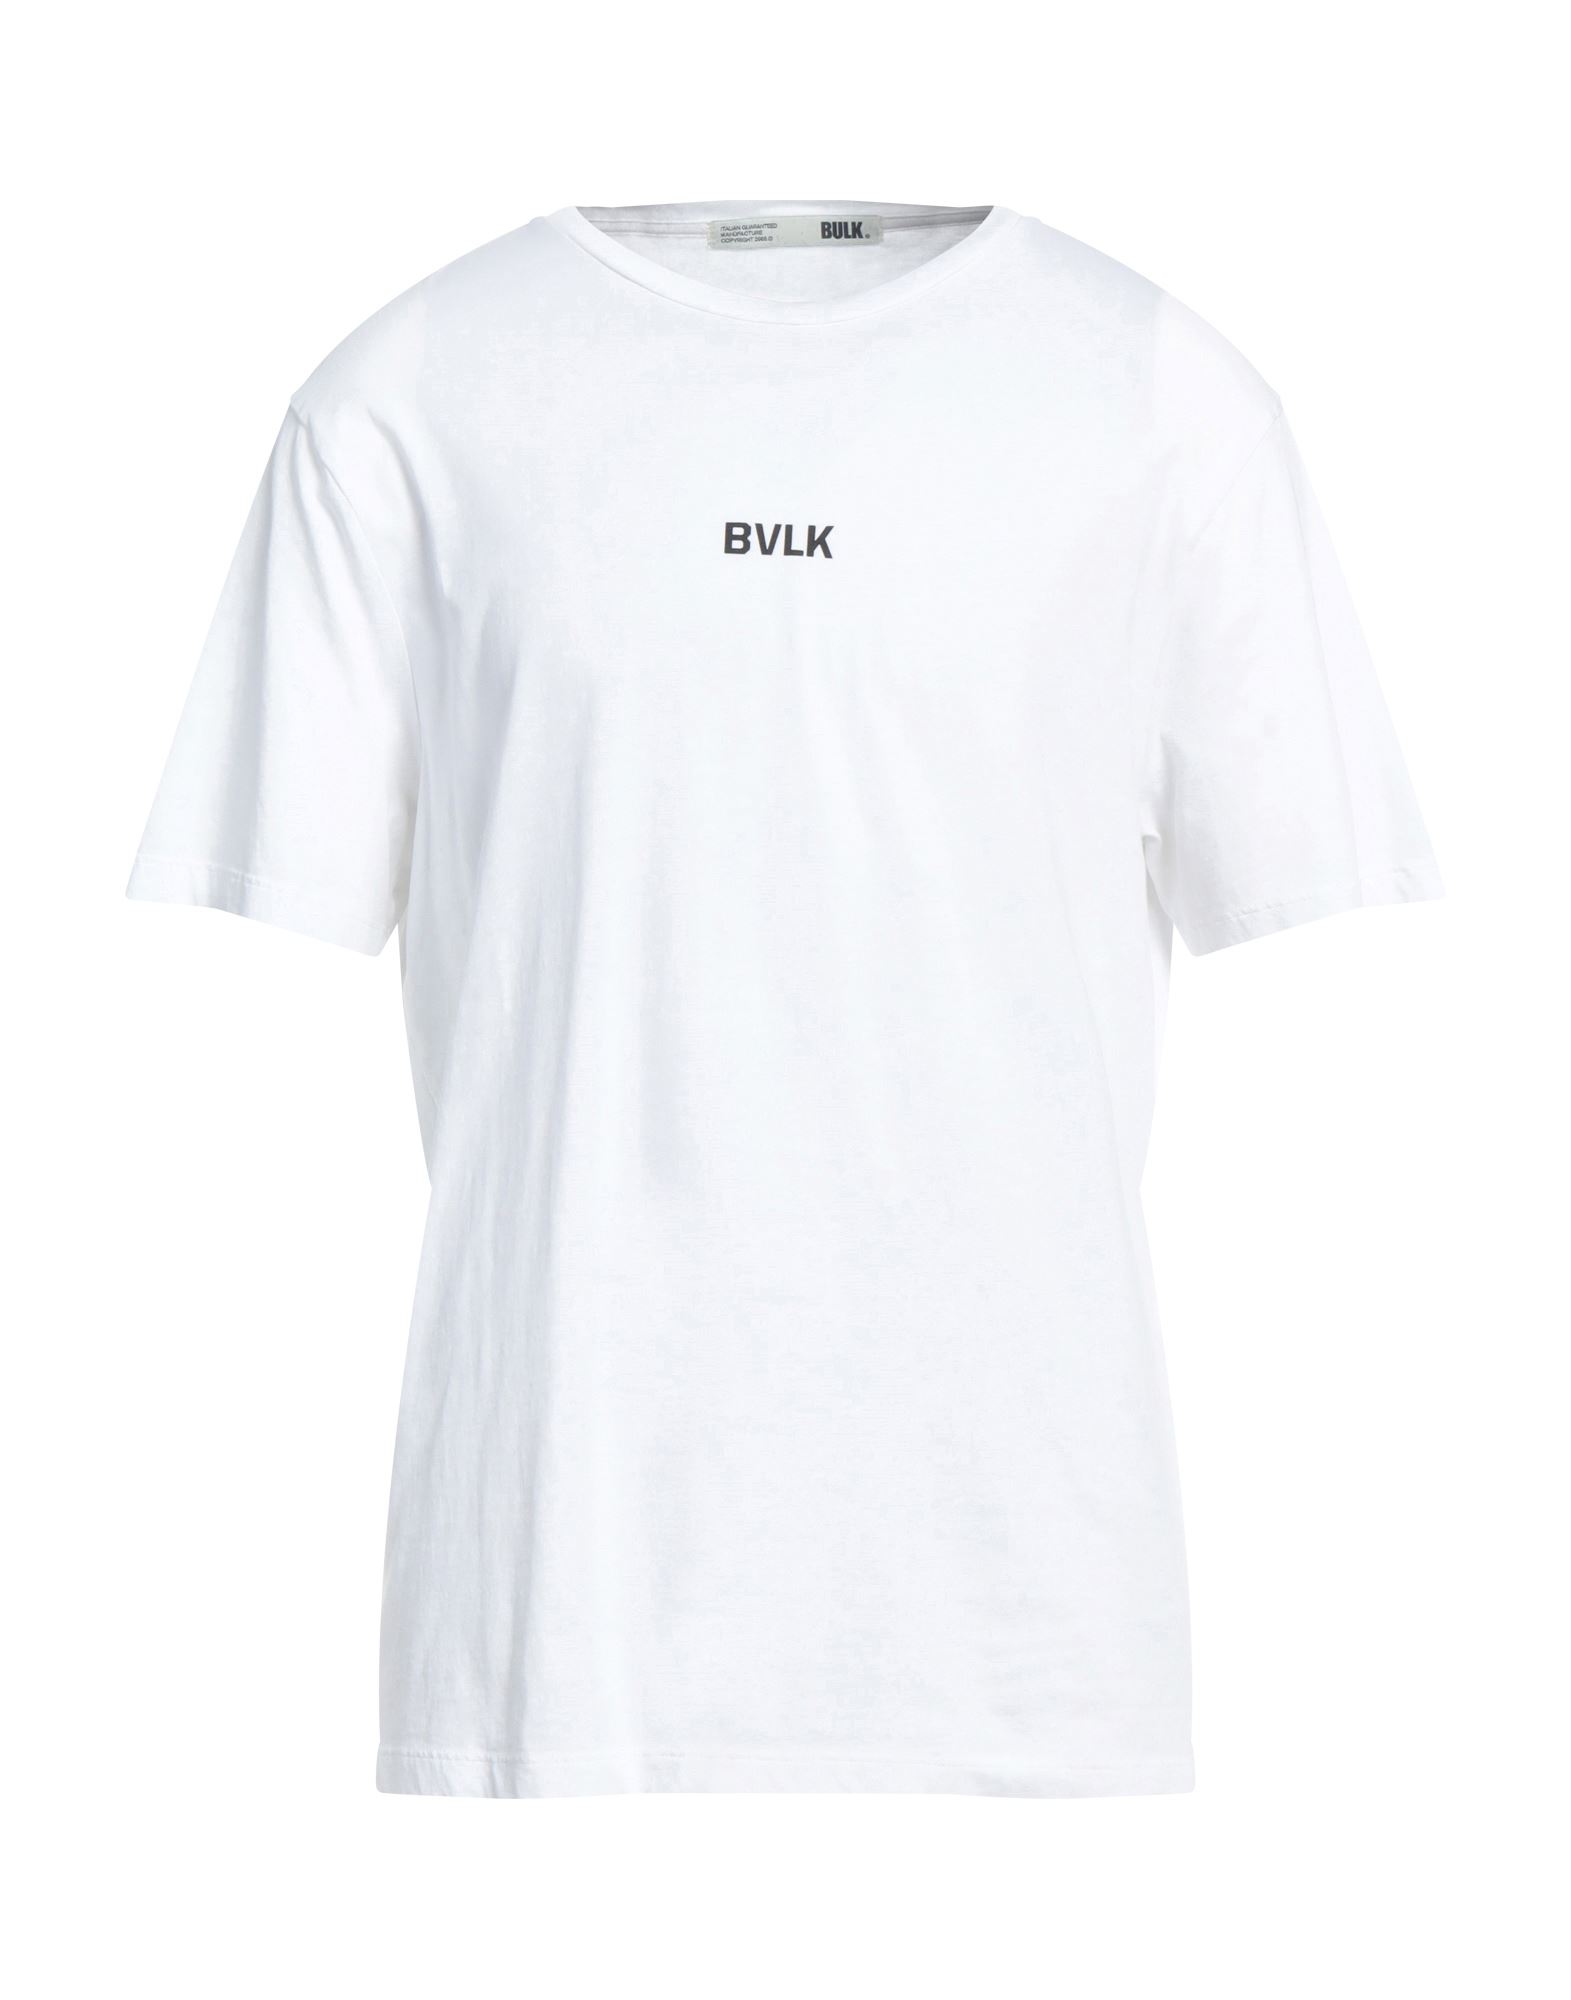 BULK BULK MAN T-SHIRT WHITE SIZE XXL COTTON